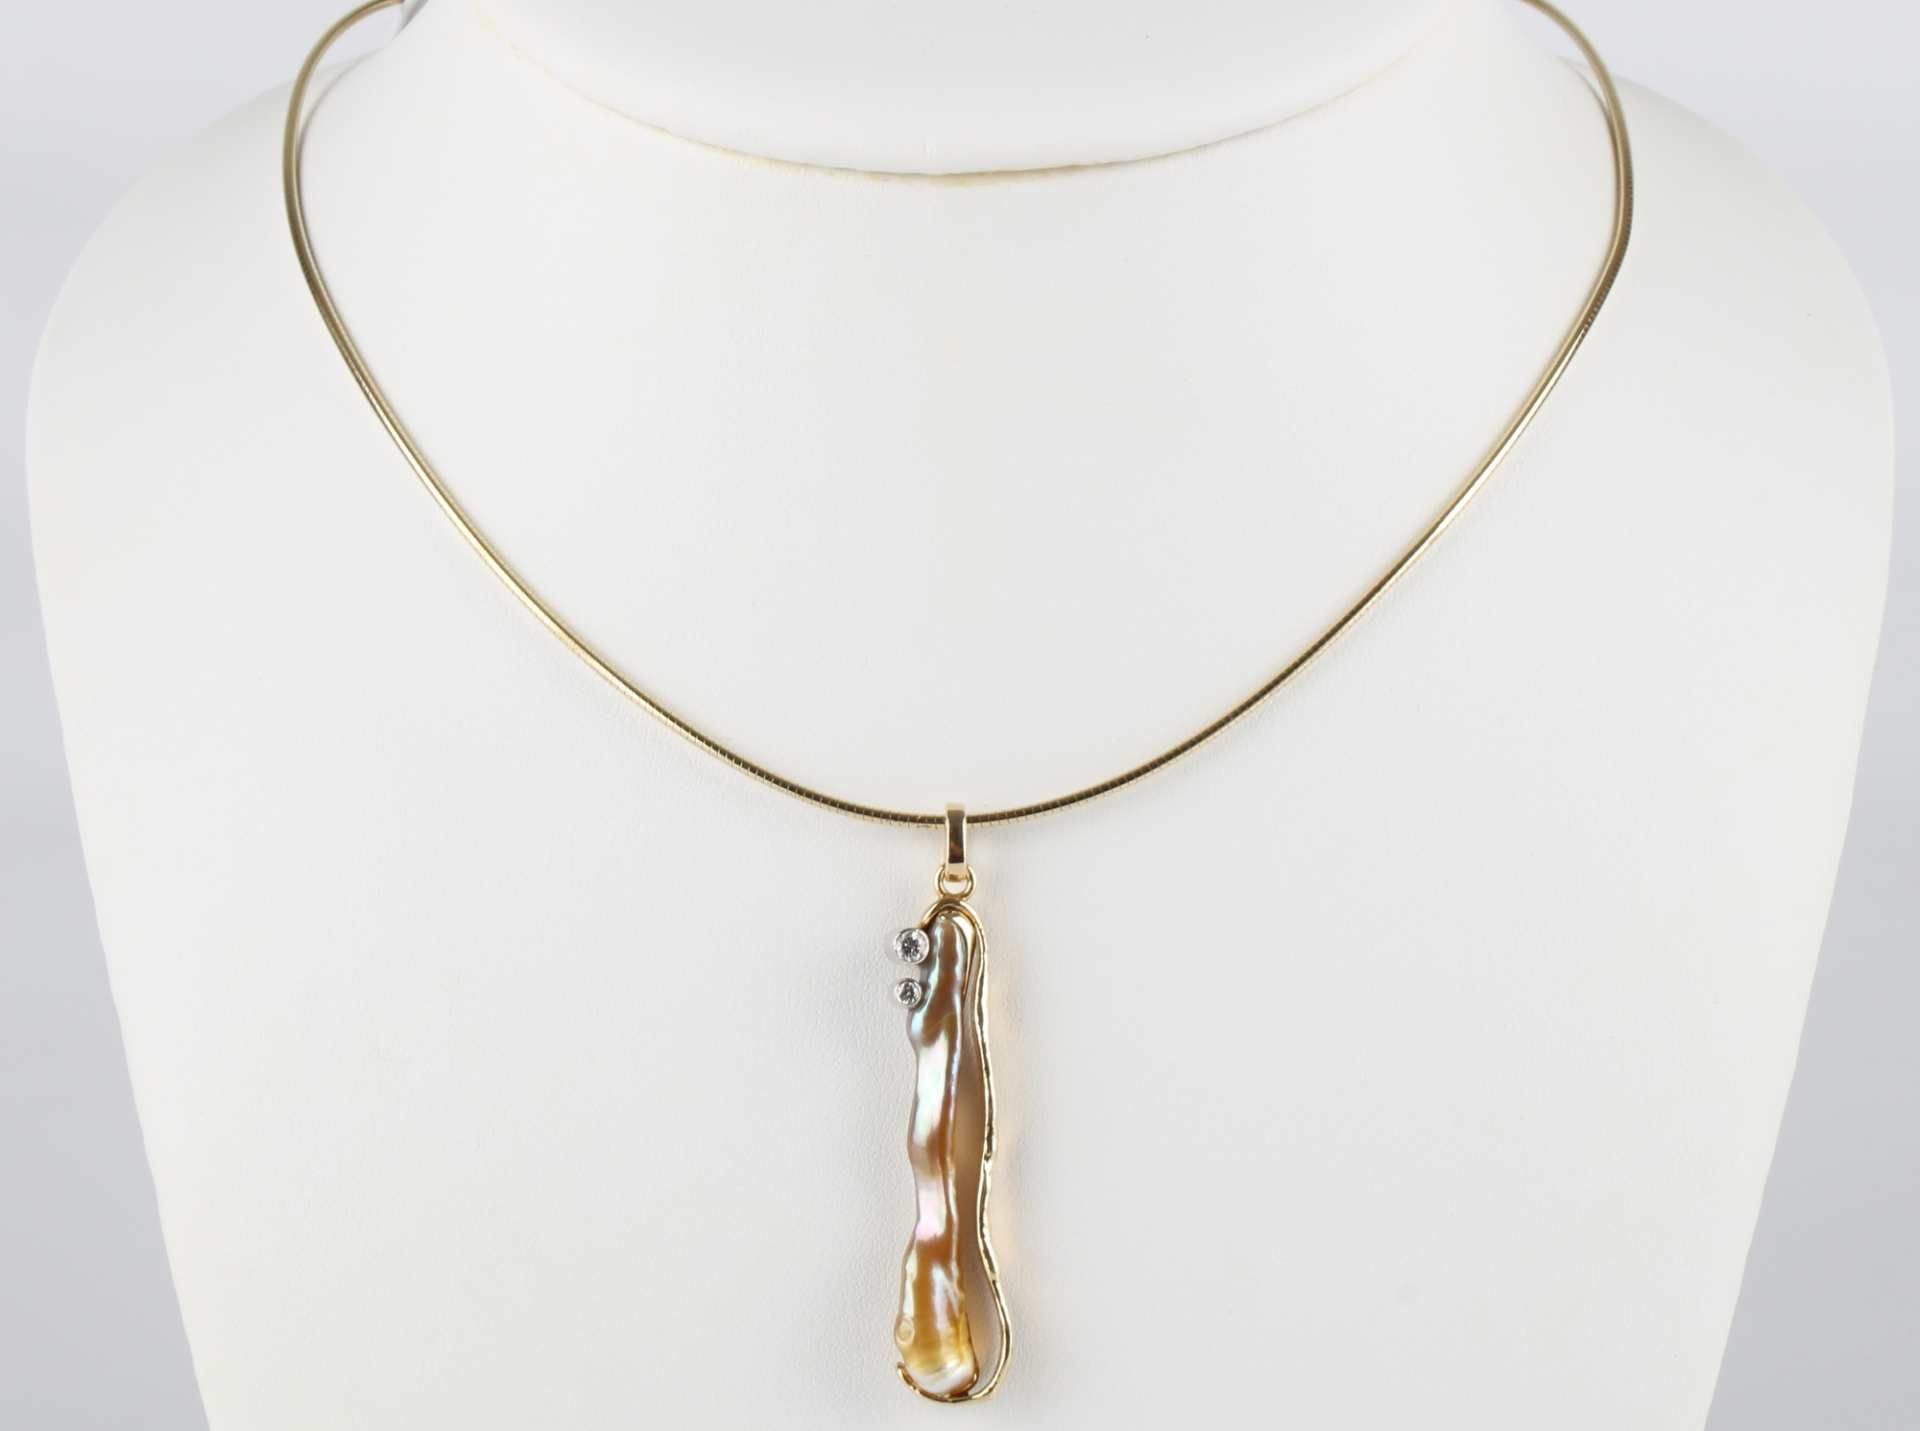 585 Gold Collier, Anhänger Biwa Perle mit zwei Brillanten 0,12 ct an Goldkette, gold necklace,